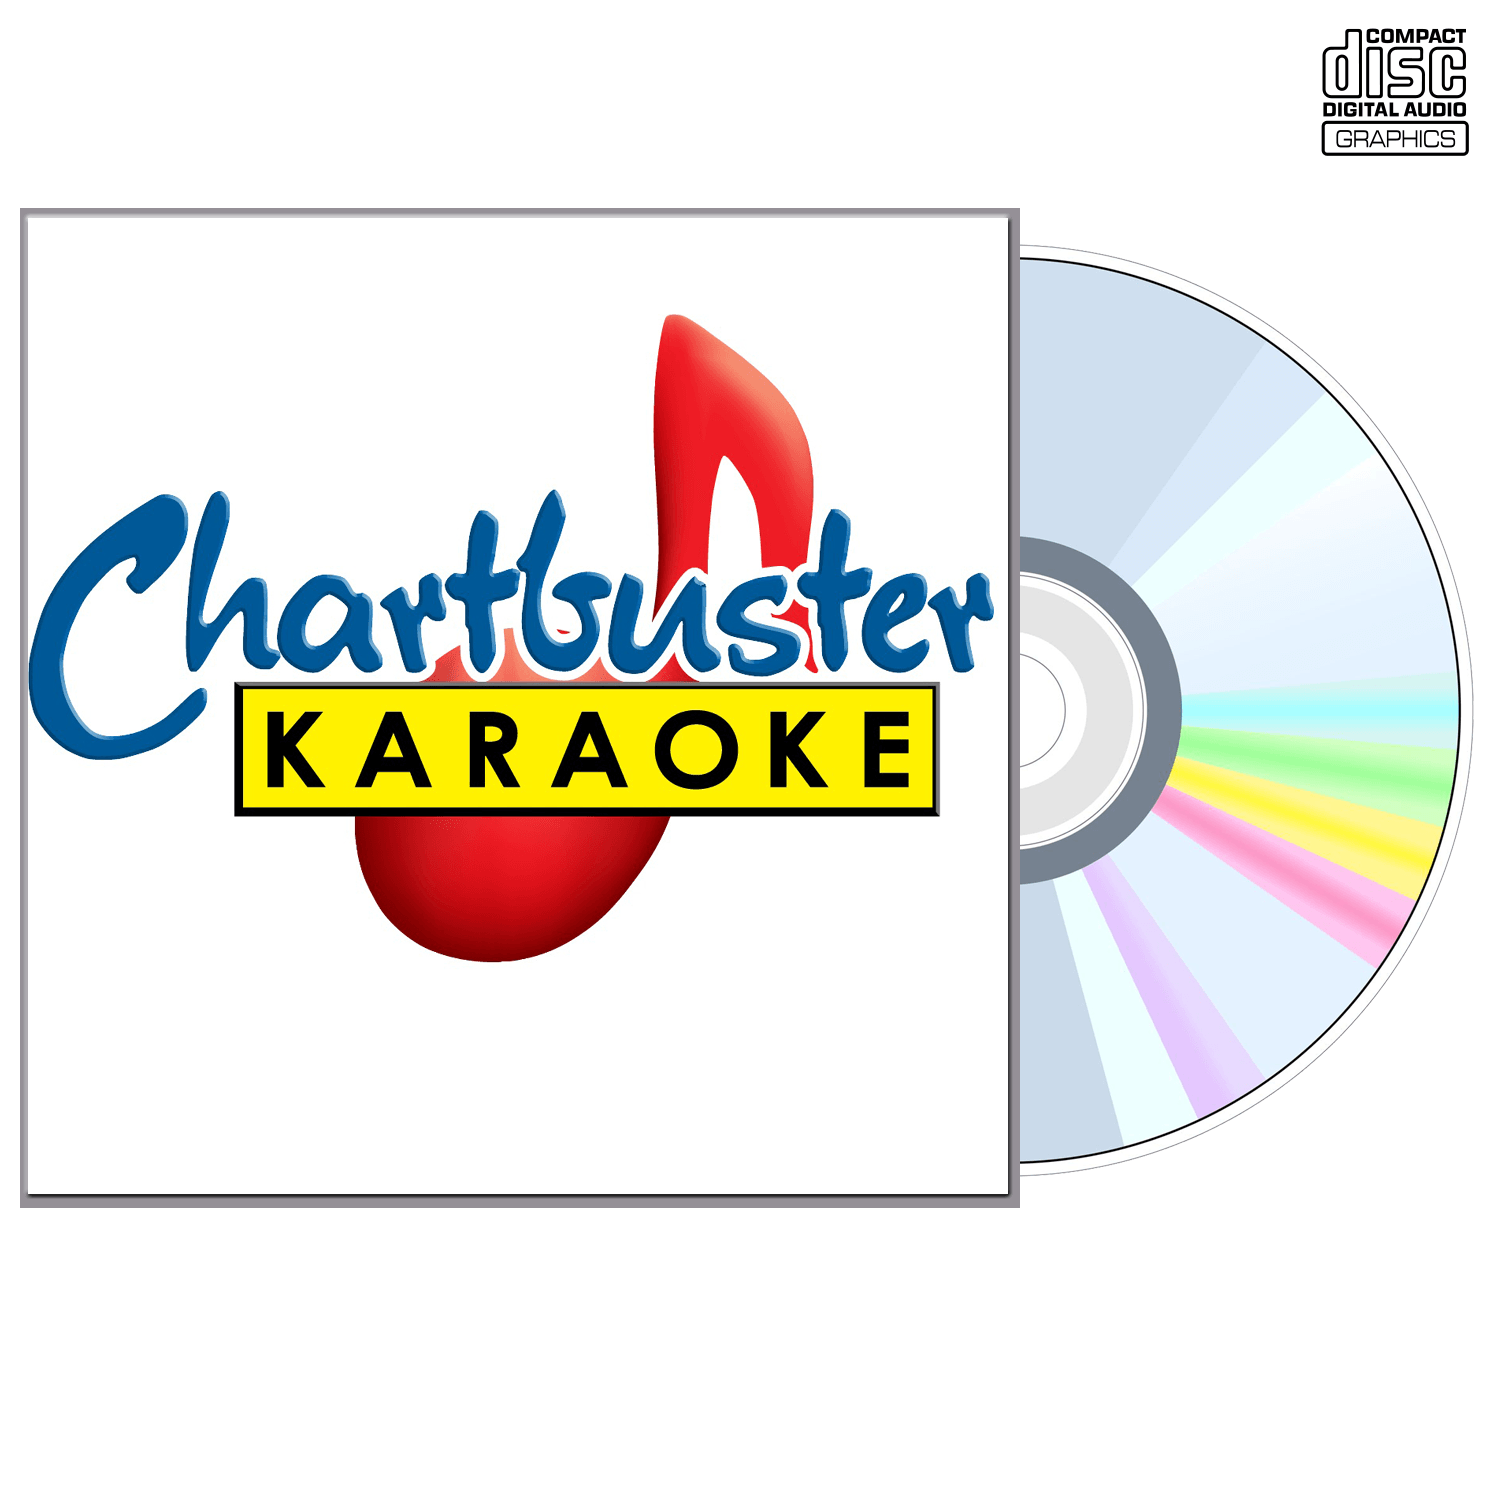 Tommy Roe - CD+G - Chartbuster Karaoke - Karaoke Home Entertainment